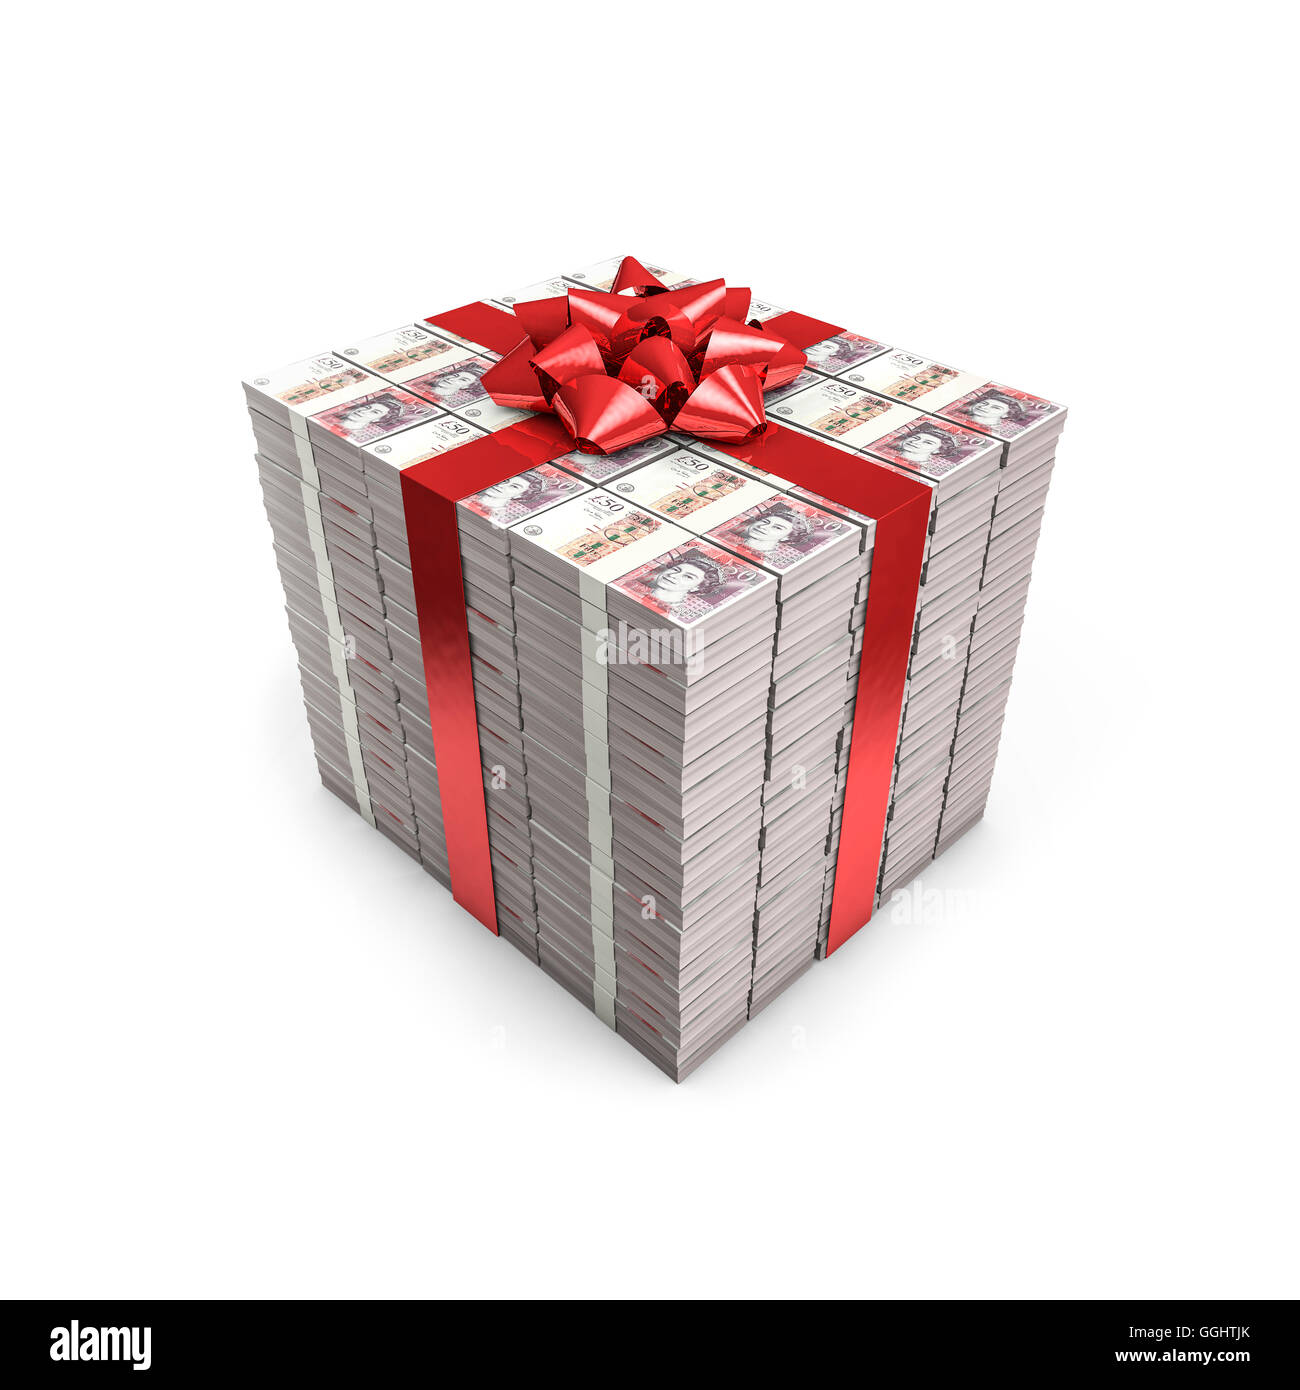 Geld Geschenk Pfund / 3D Darstellung der Stapel von fünfzig Pfund-Noten mit Band gebunden Stockfoto